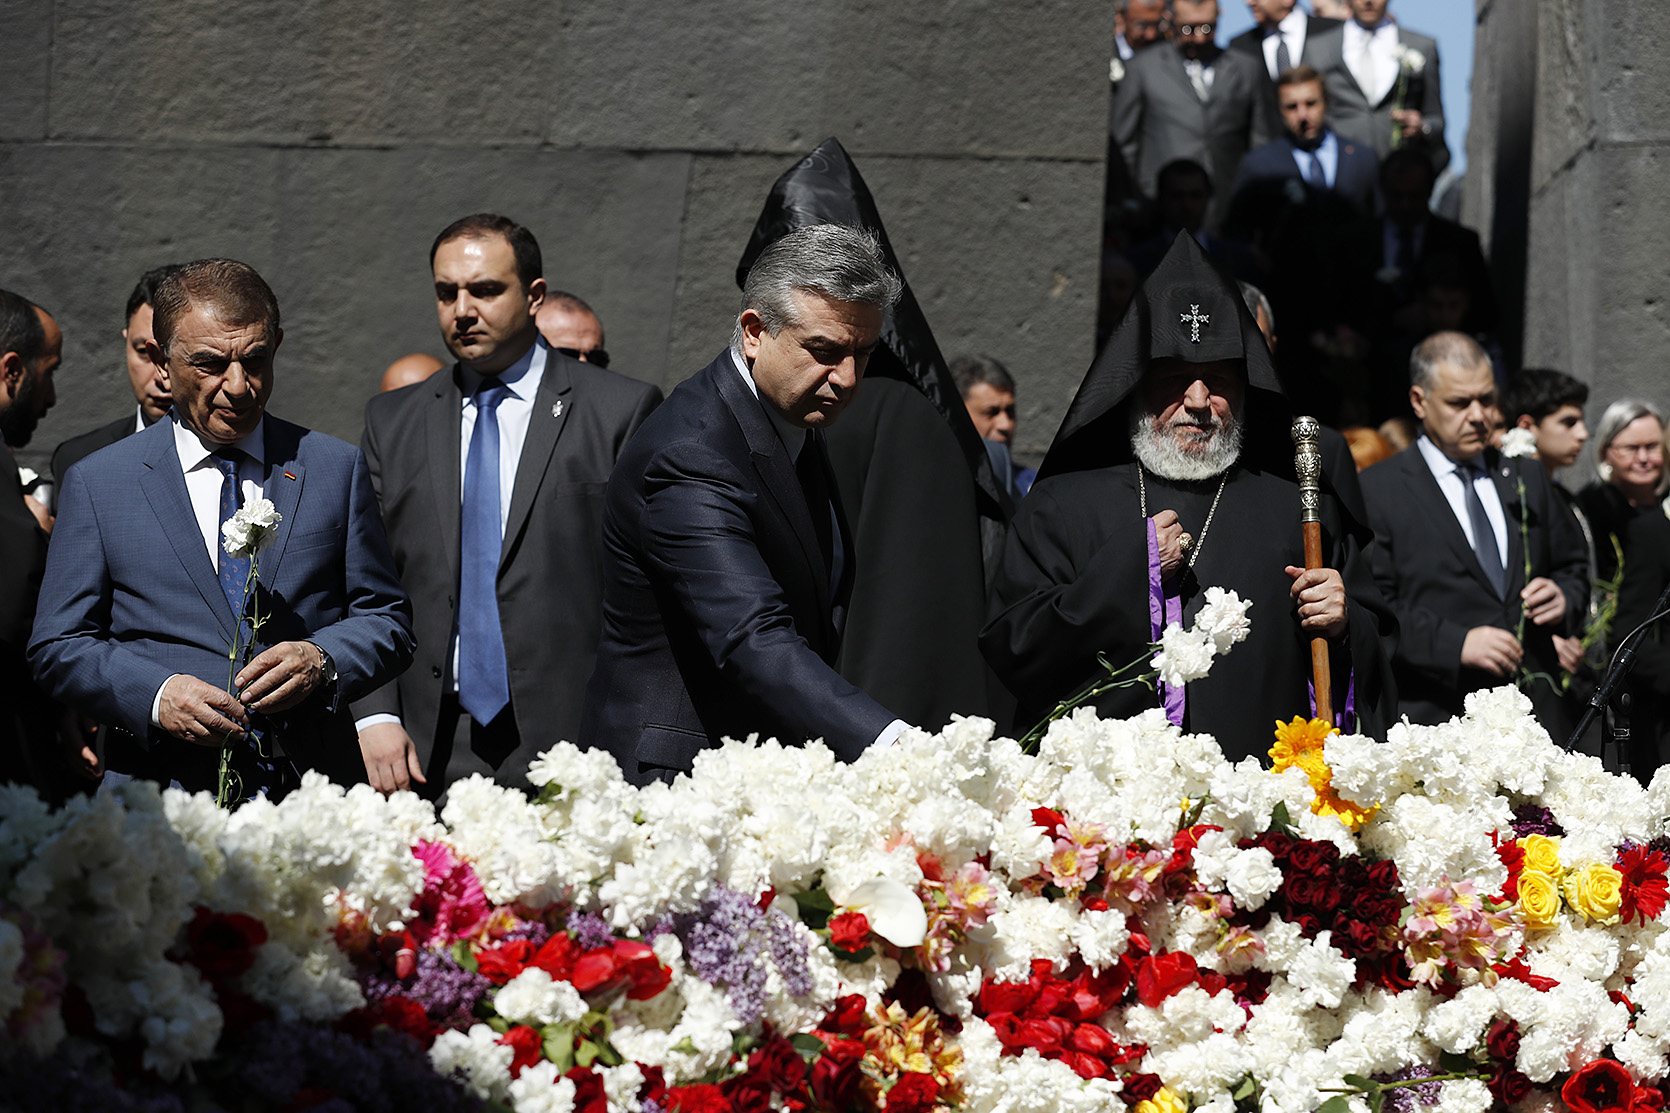 Сегодня Армения проходит очередной трудный этап своей новейшей истории - Карапетян